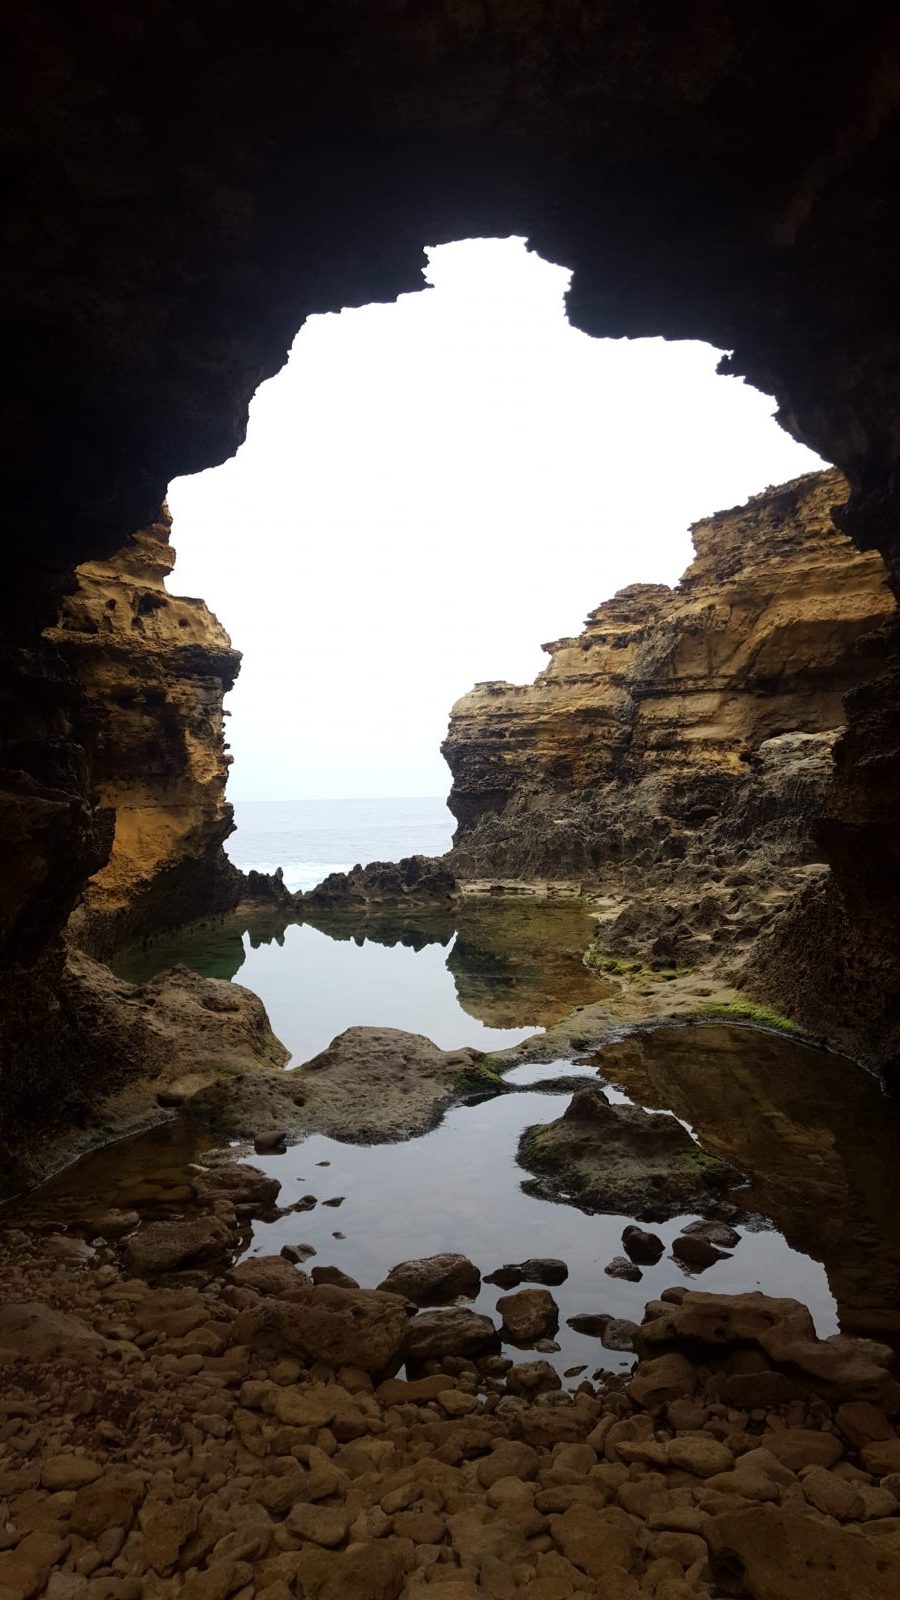 The Grotto arche